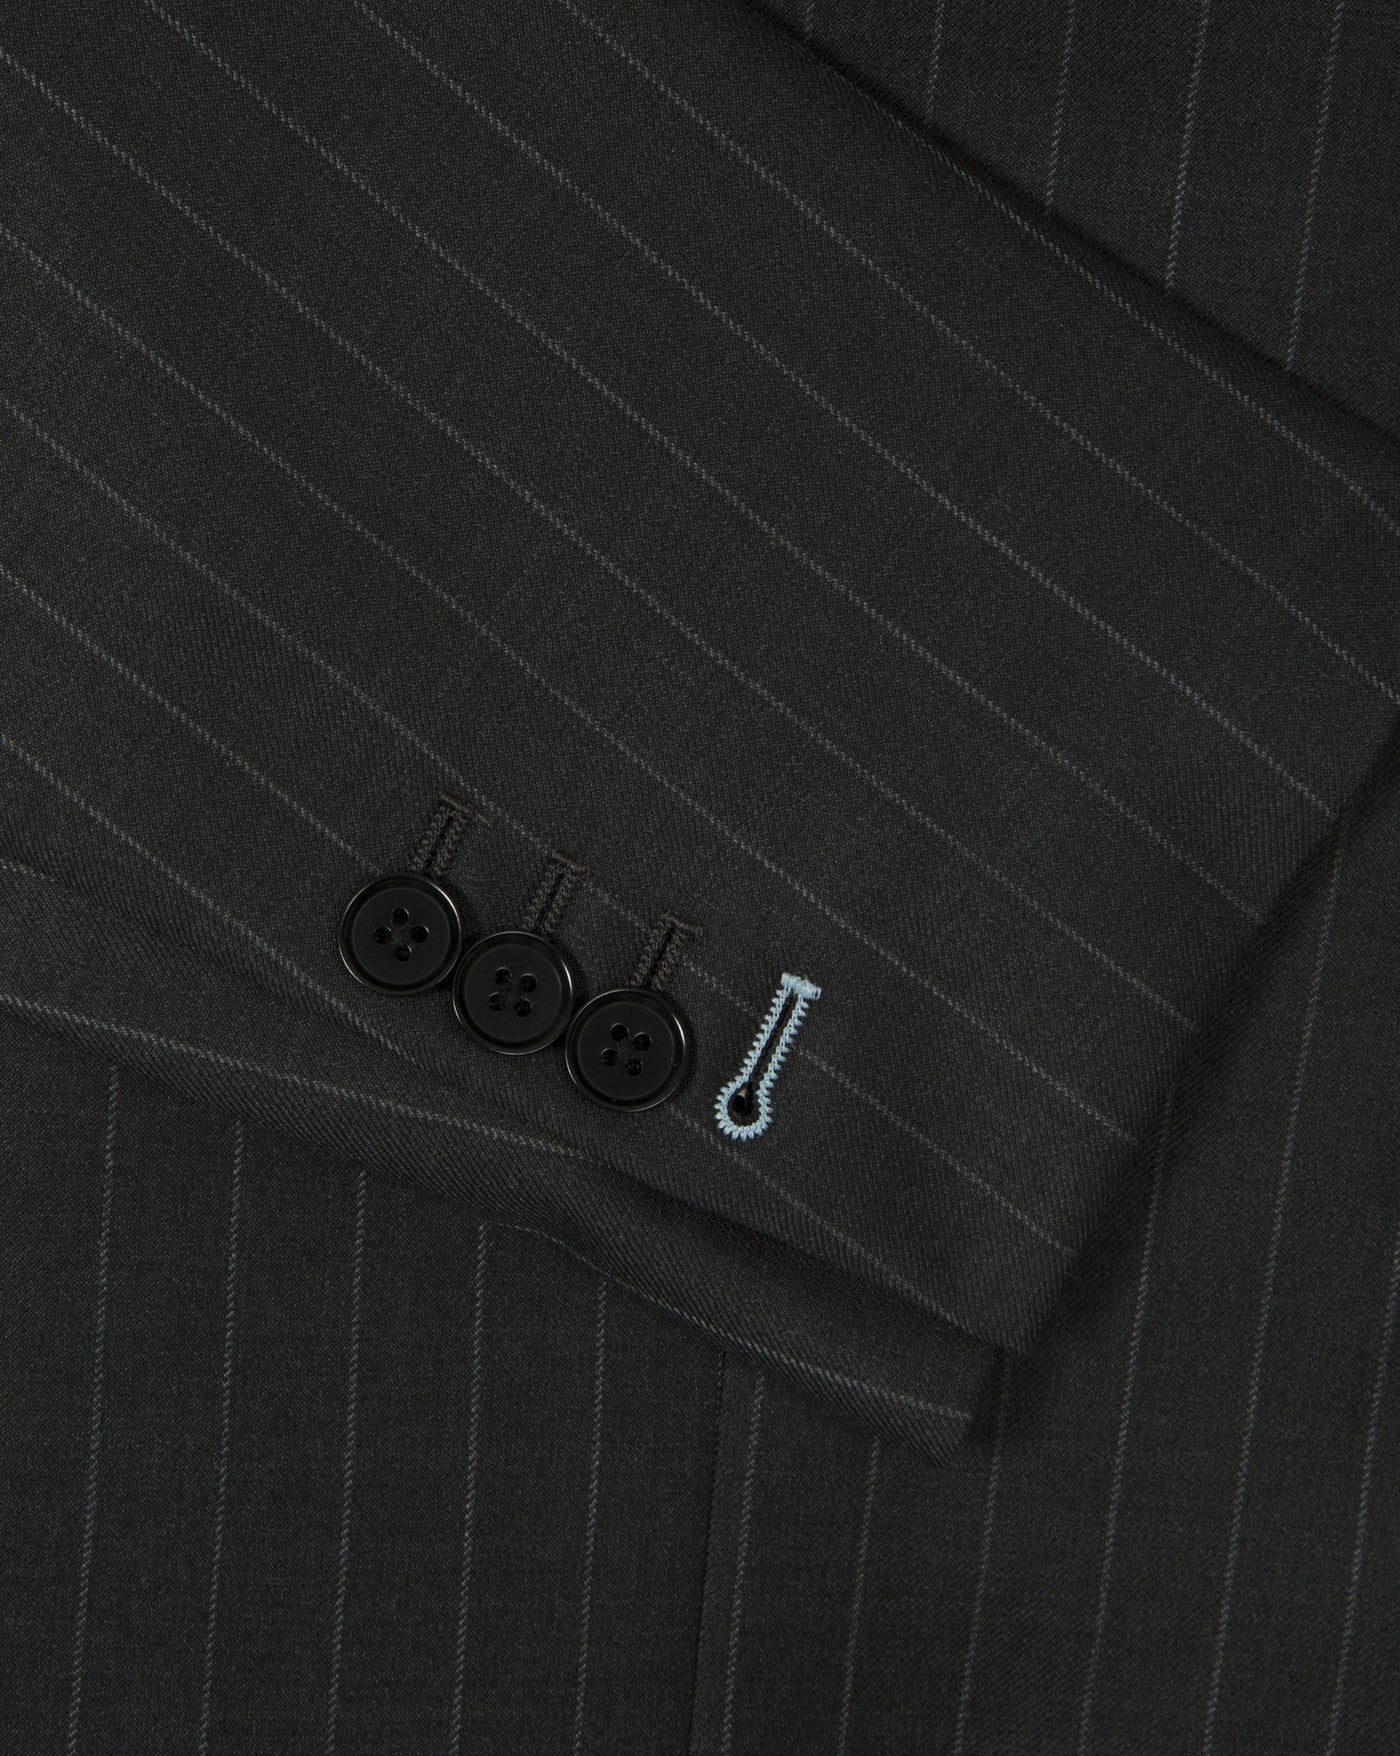 Charcoal Grey Pinstripe Suit - Mark marengo